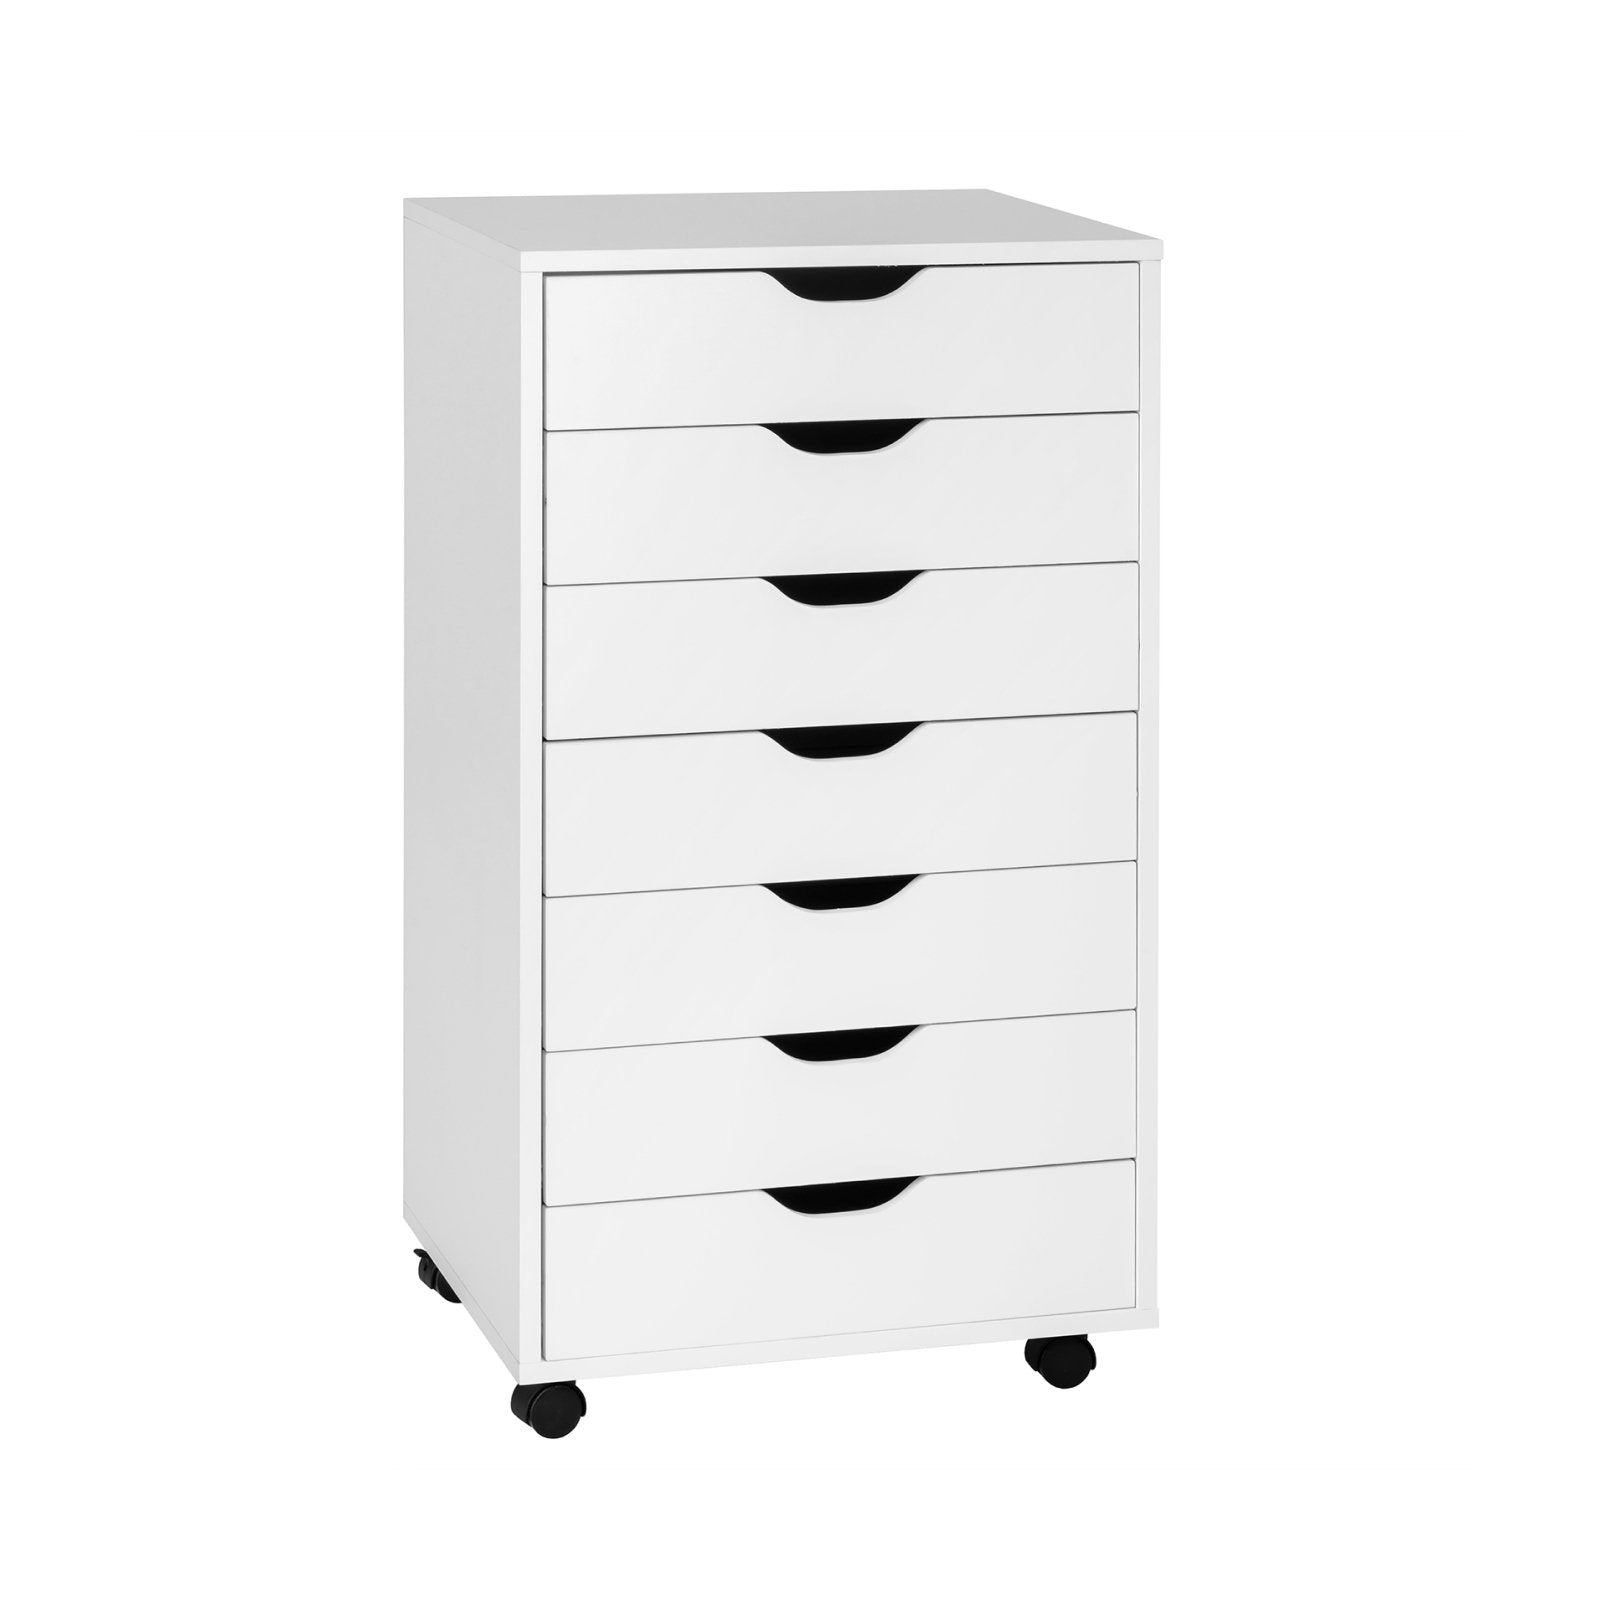 7-Drawer Chest Storage Dresser Floor Cabinet Organizer with Wheels, White - Gallery Canada